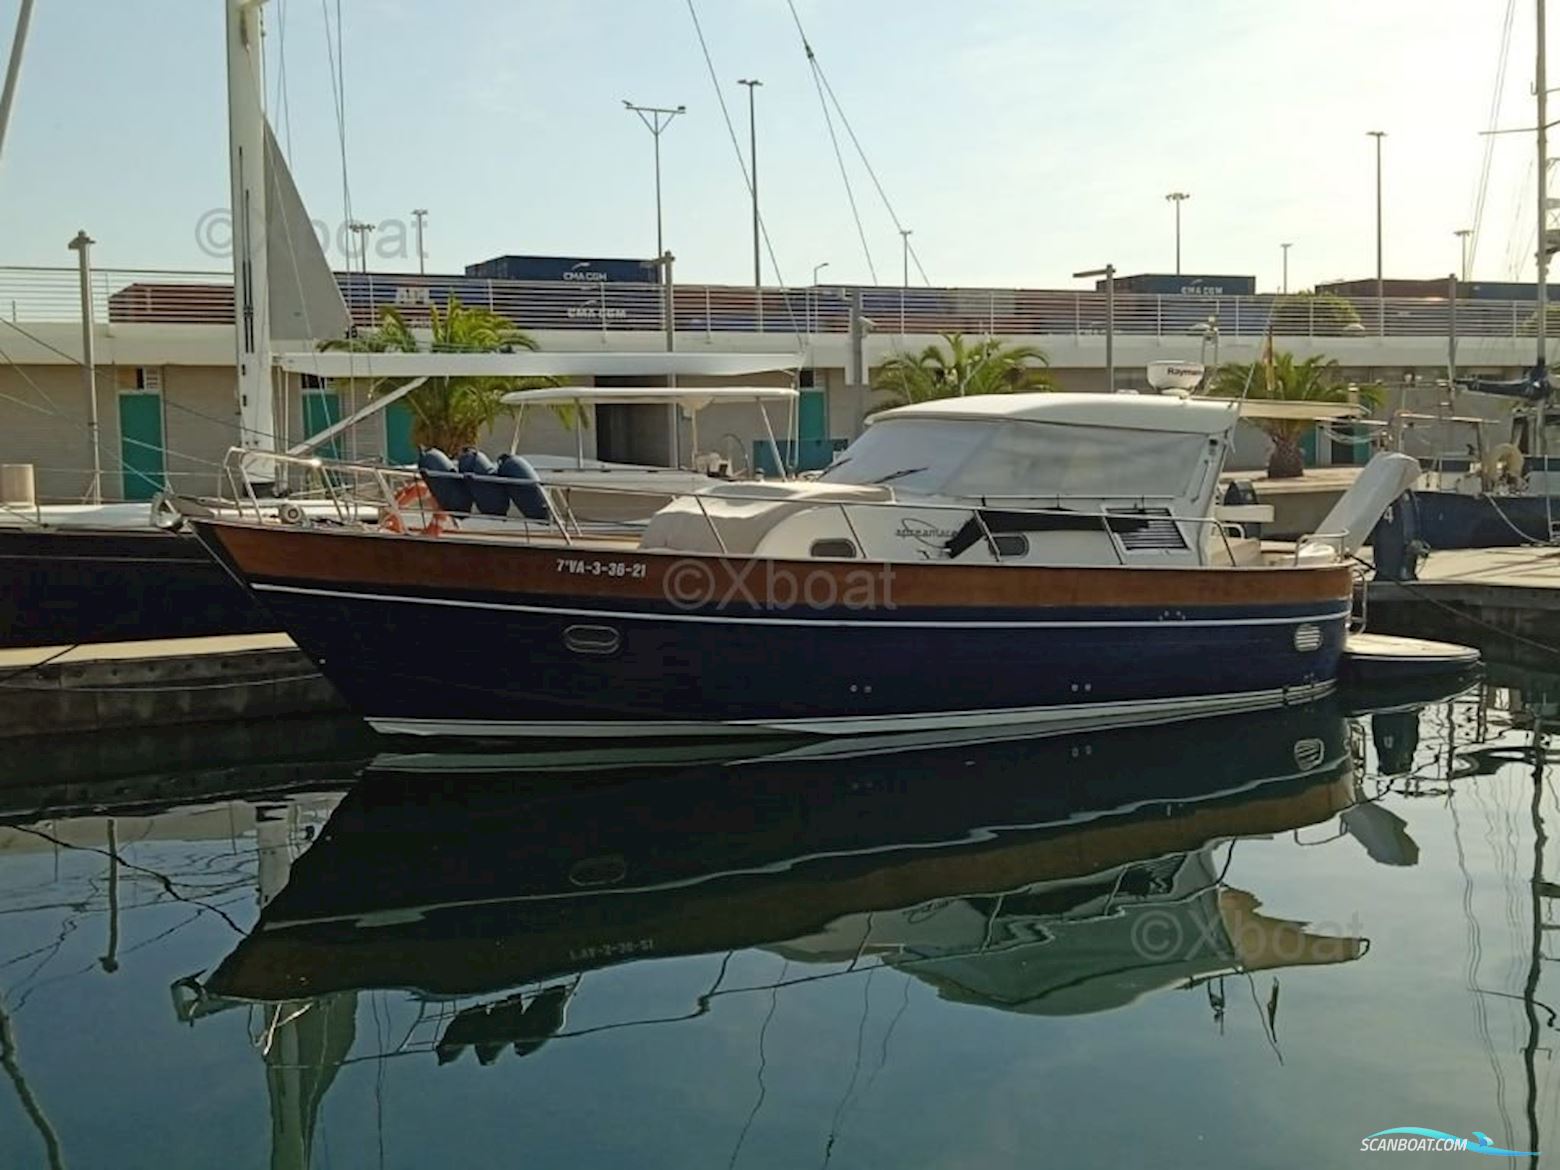 Apreamare 12 Semicabinato Motor boat 2006, with Volvo engine, Spain